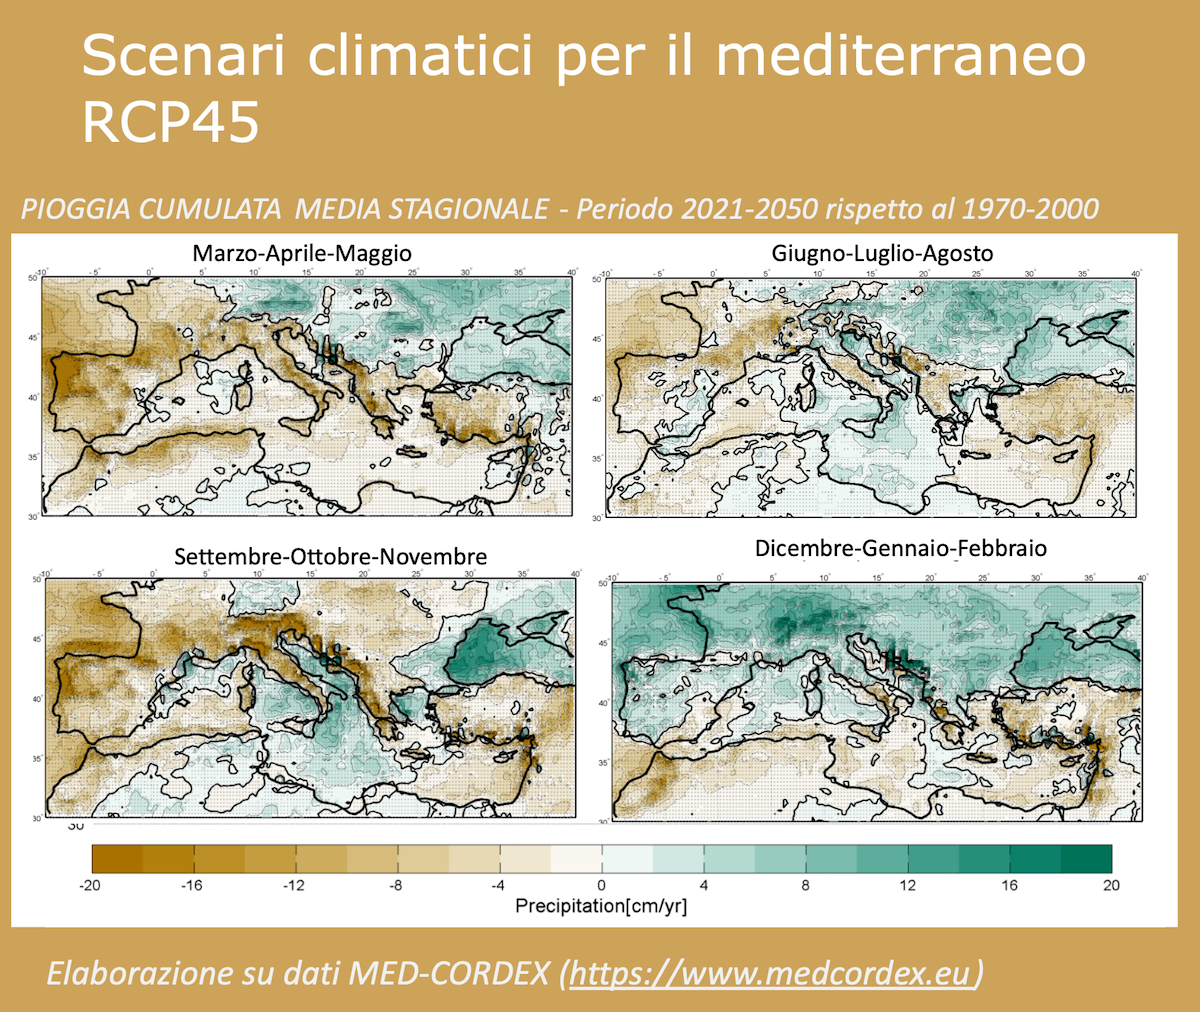 Scenari climatici per il Mediterraneo: pioggia cumulata media stagionale